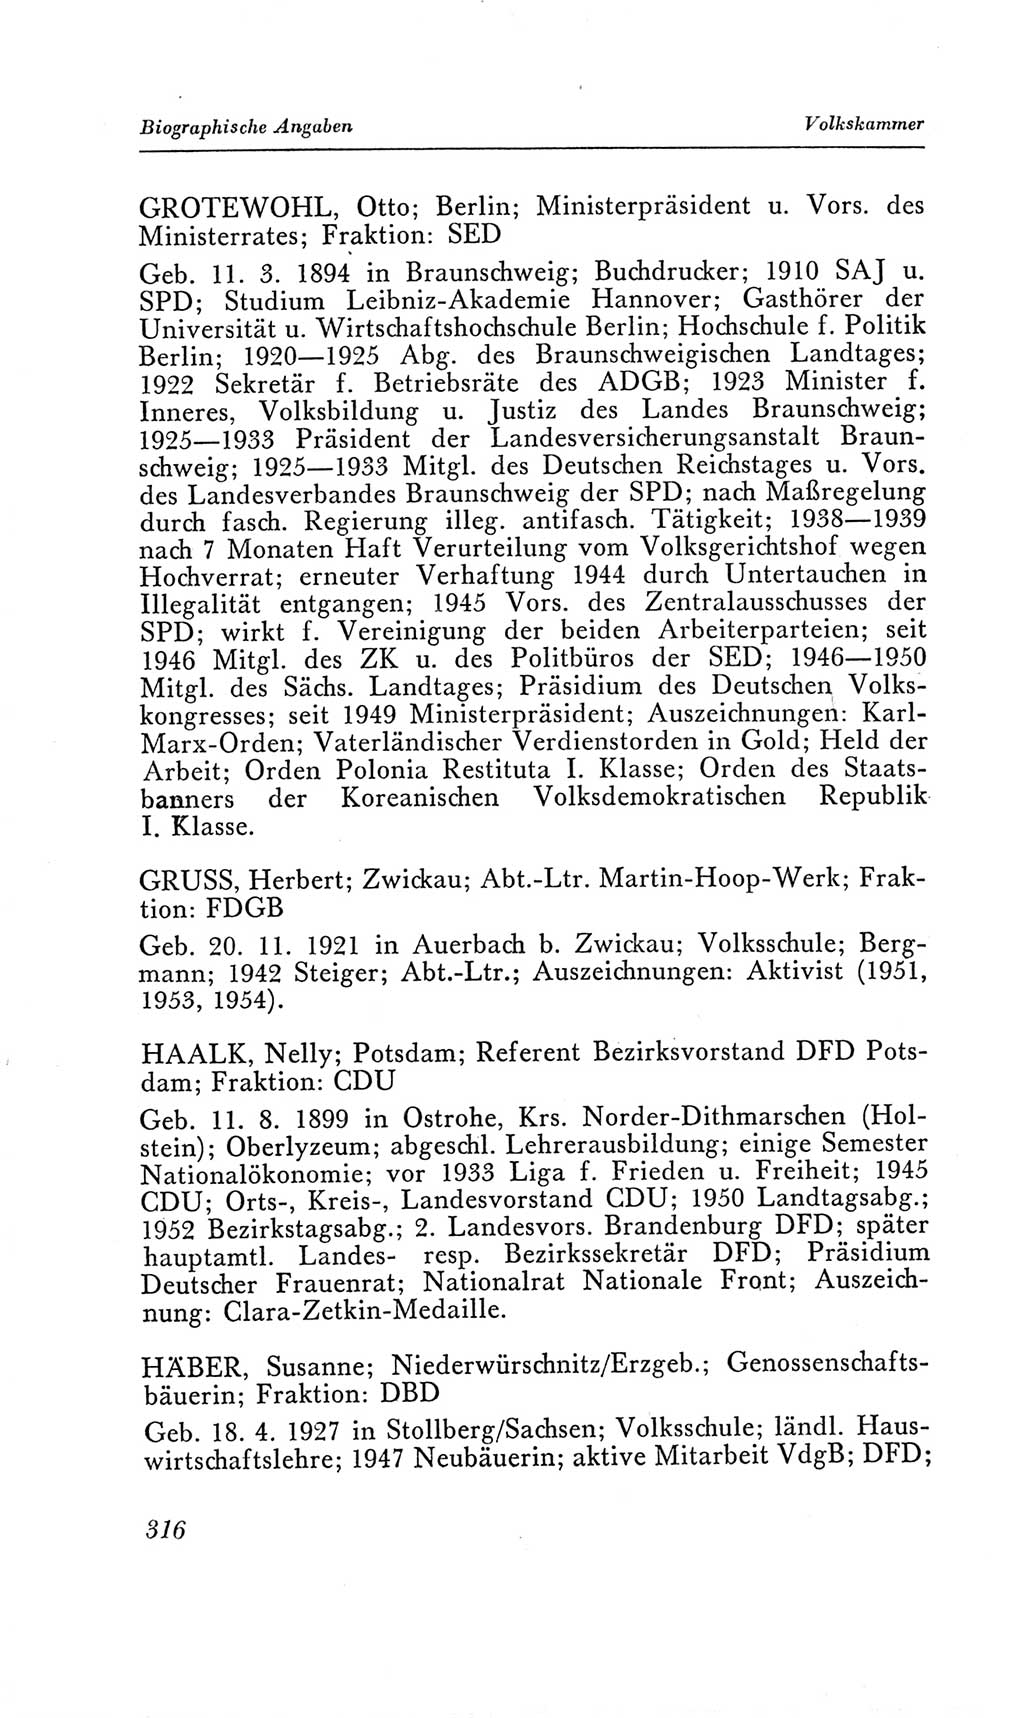 Handbuch der Volkskammer (VK) der Deutschen Demokratischen Republik (DDR), 2. Wahlperiode 1954-1958, Seite 316 (Hdb. VK. DDR, 2. WP. 1954-1958, S. 316)